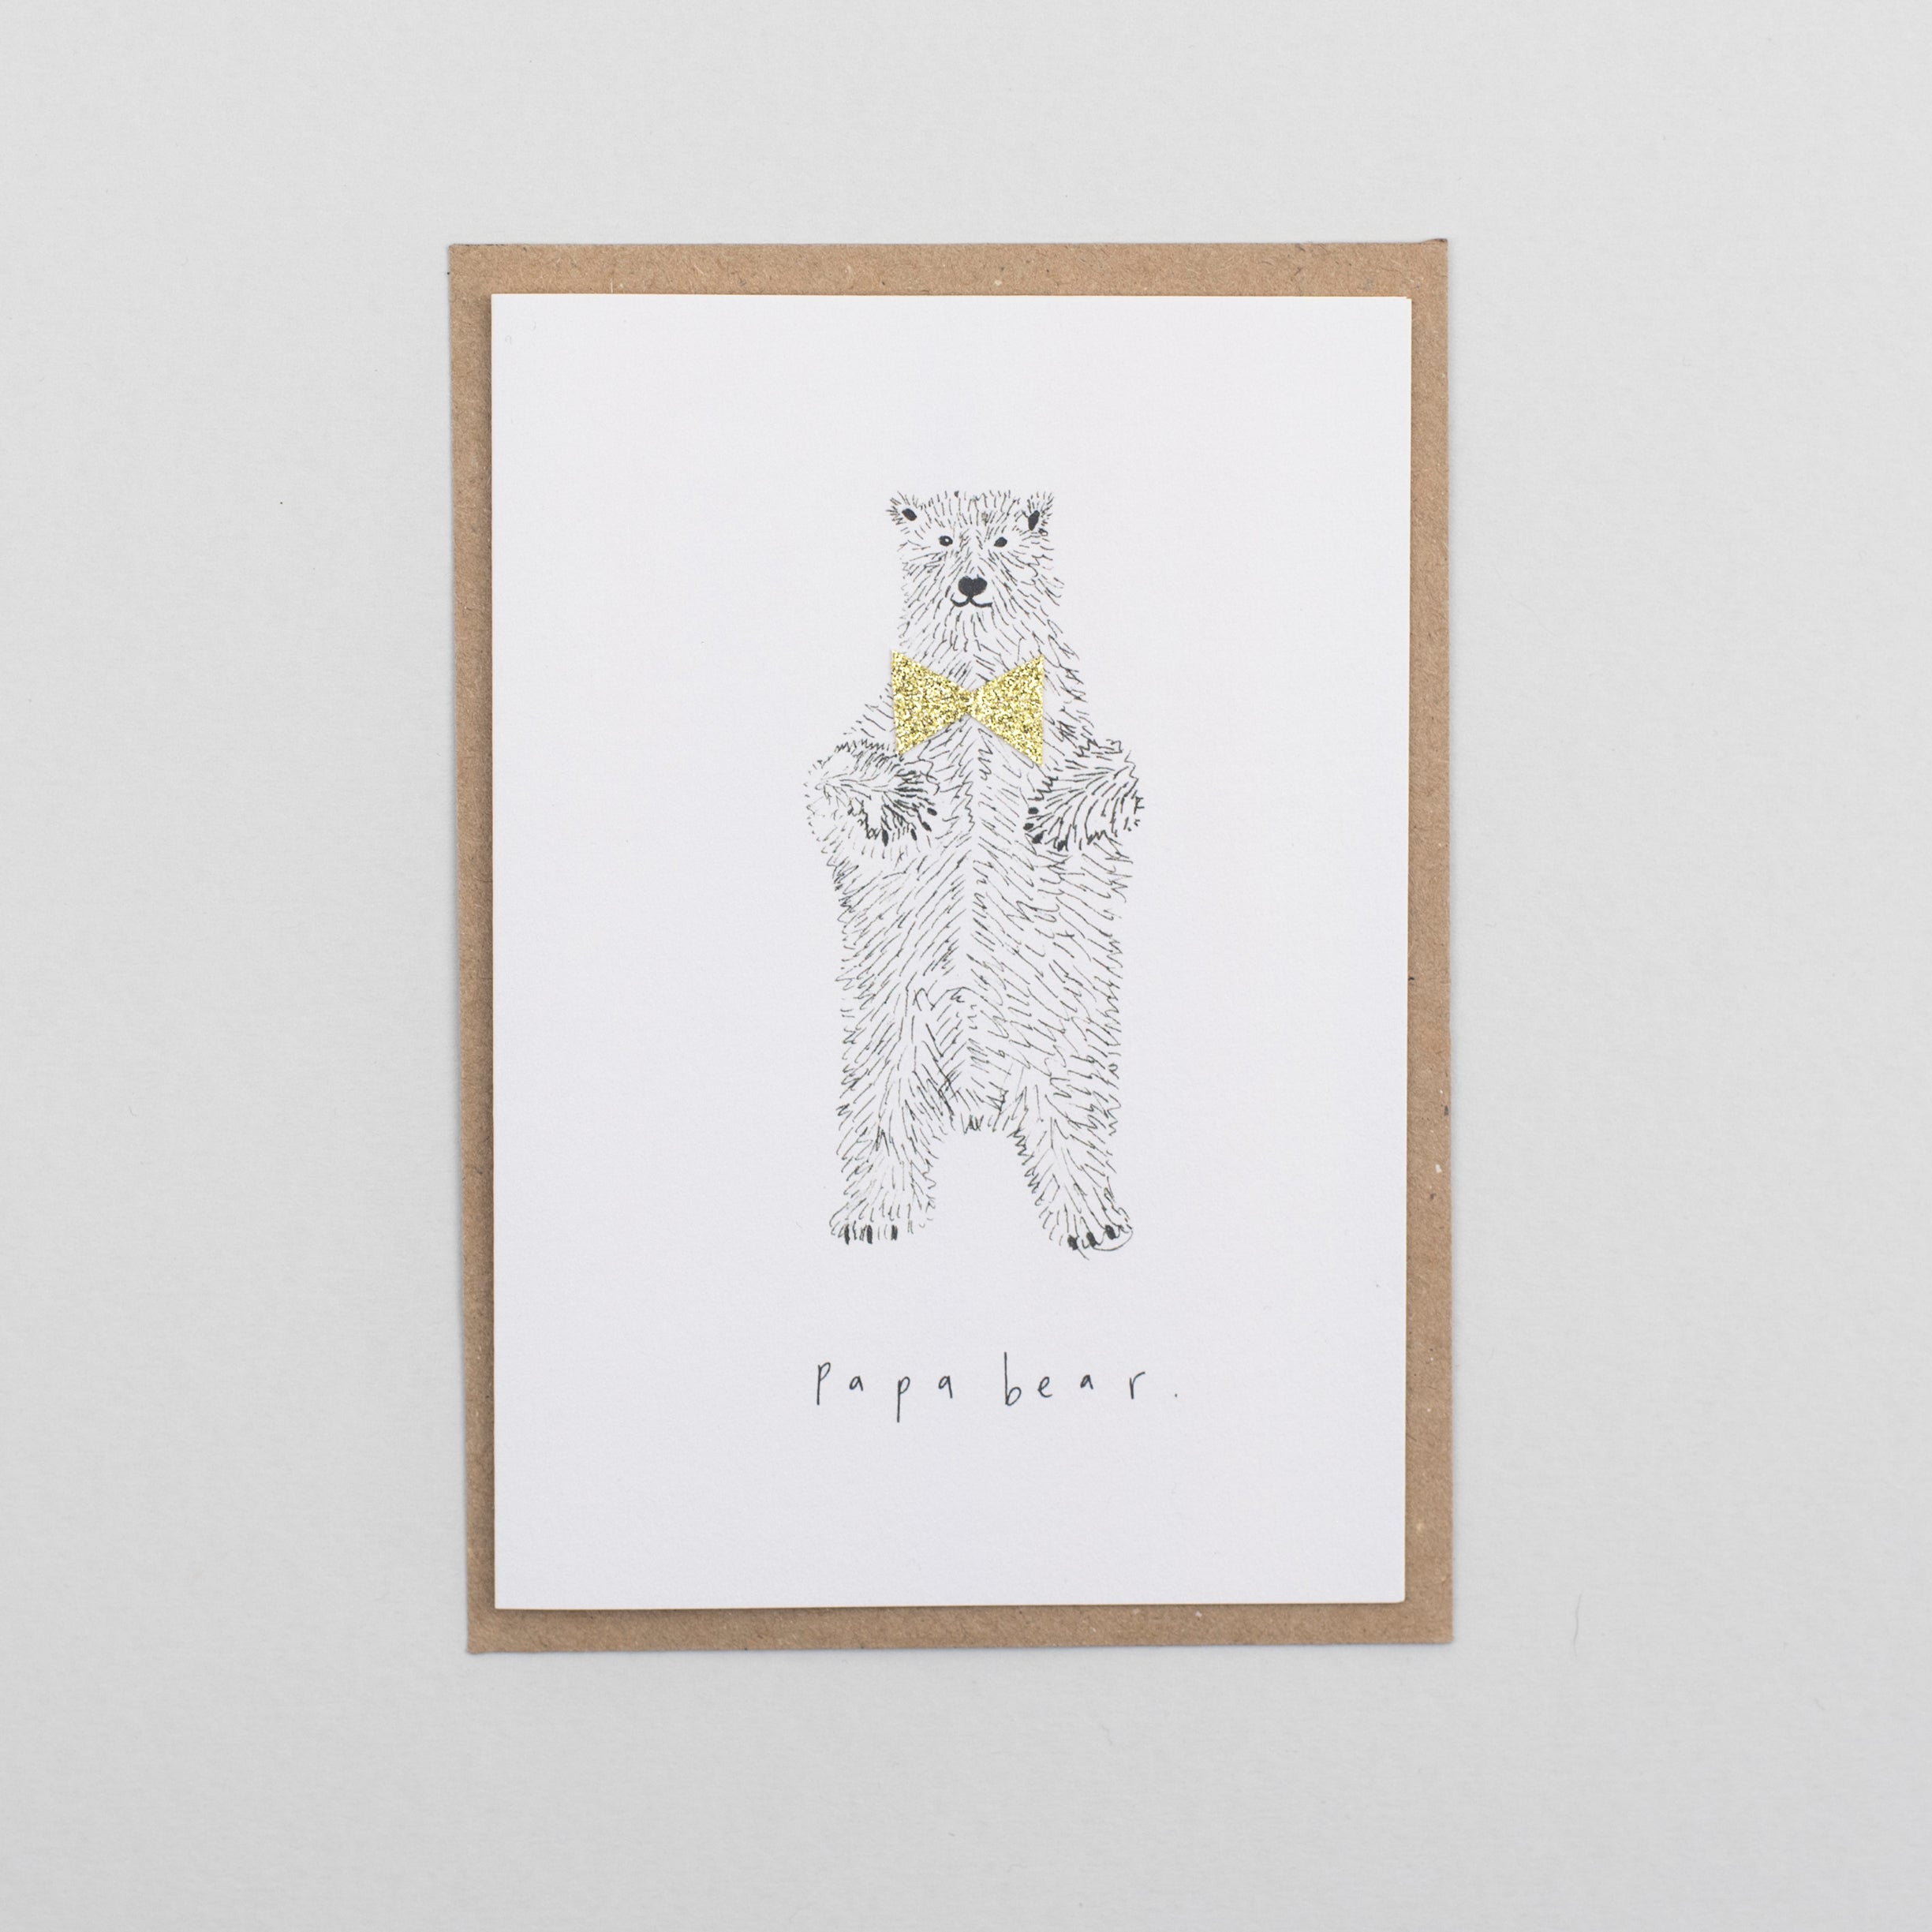 'Papa Bear' Greetings Card